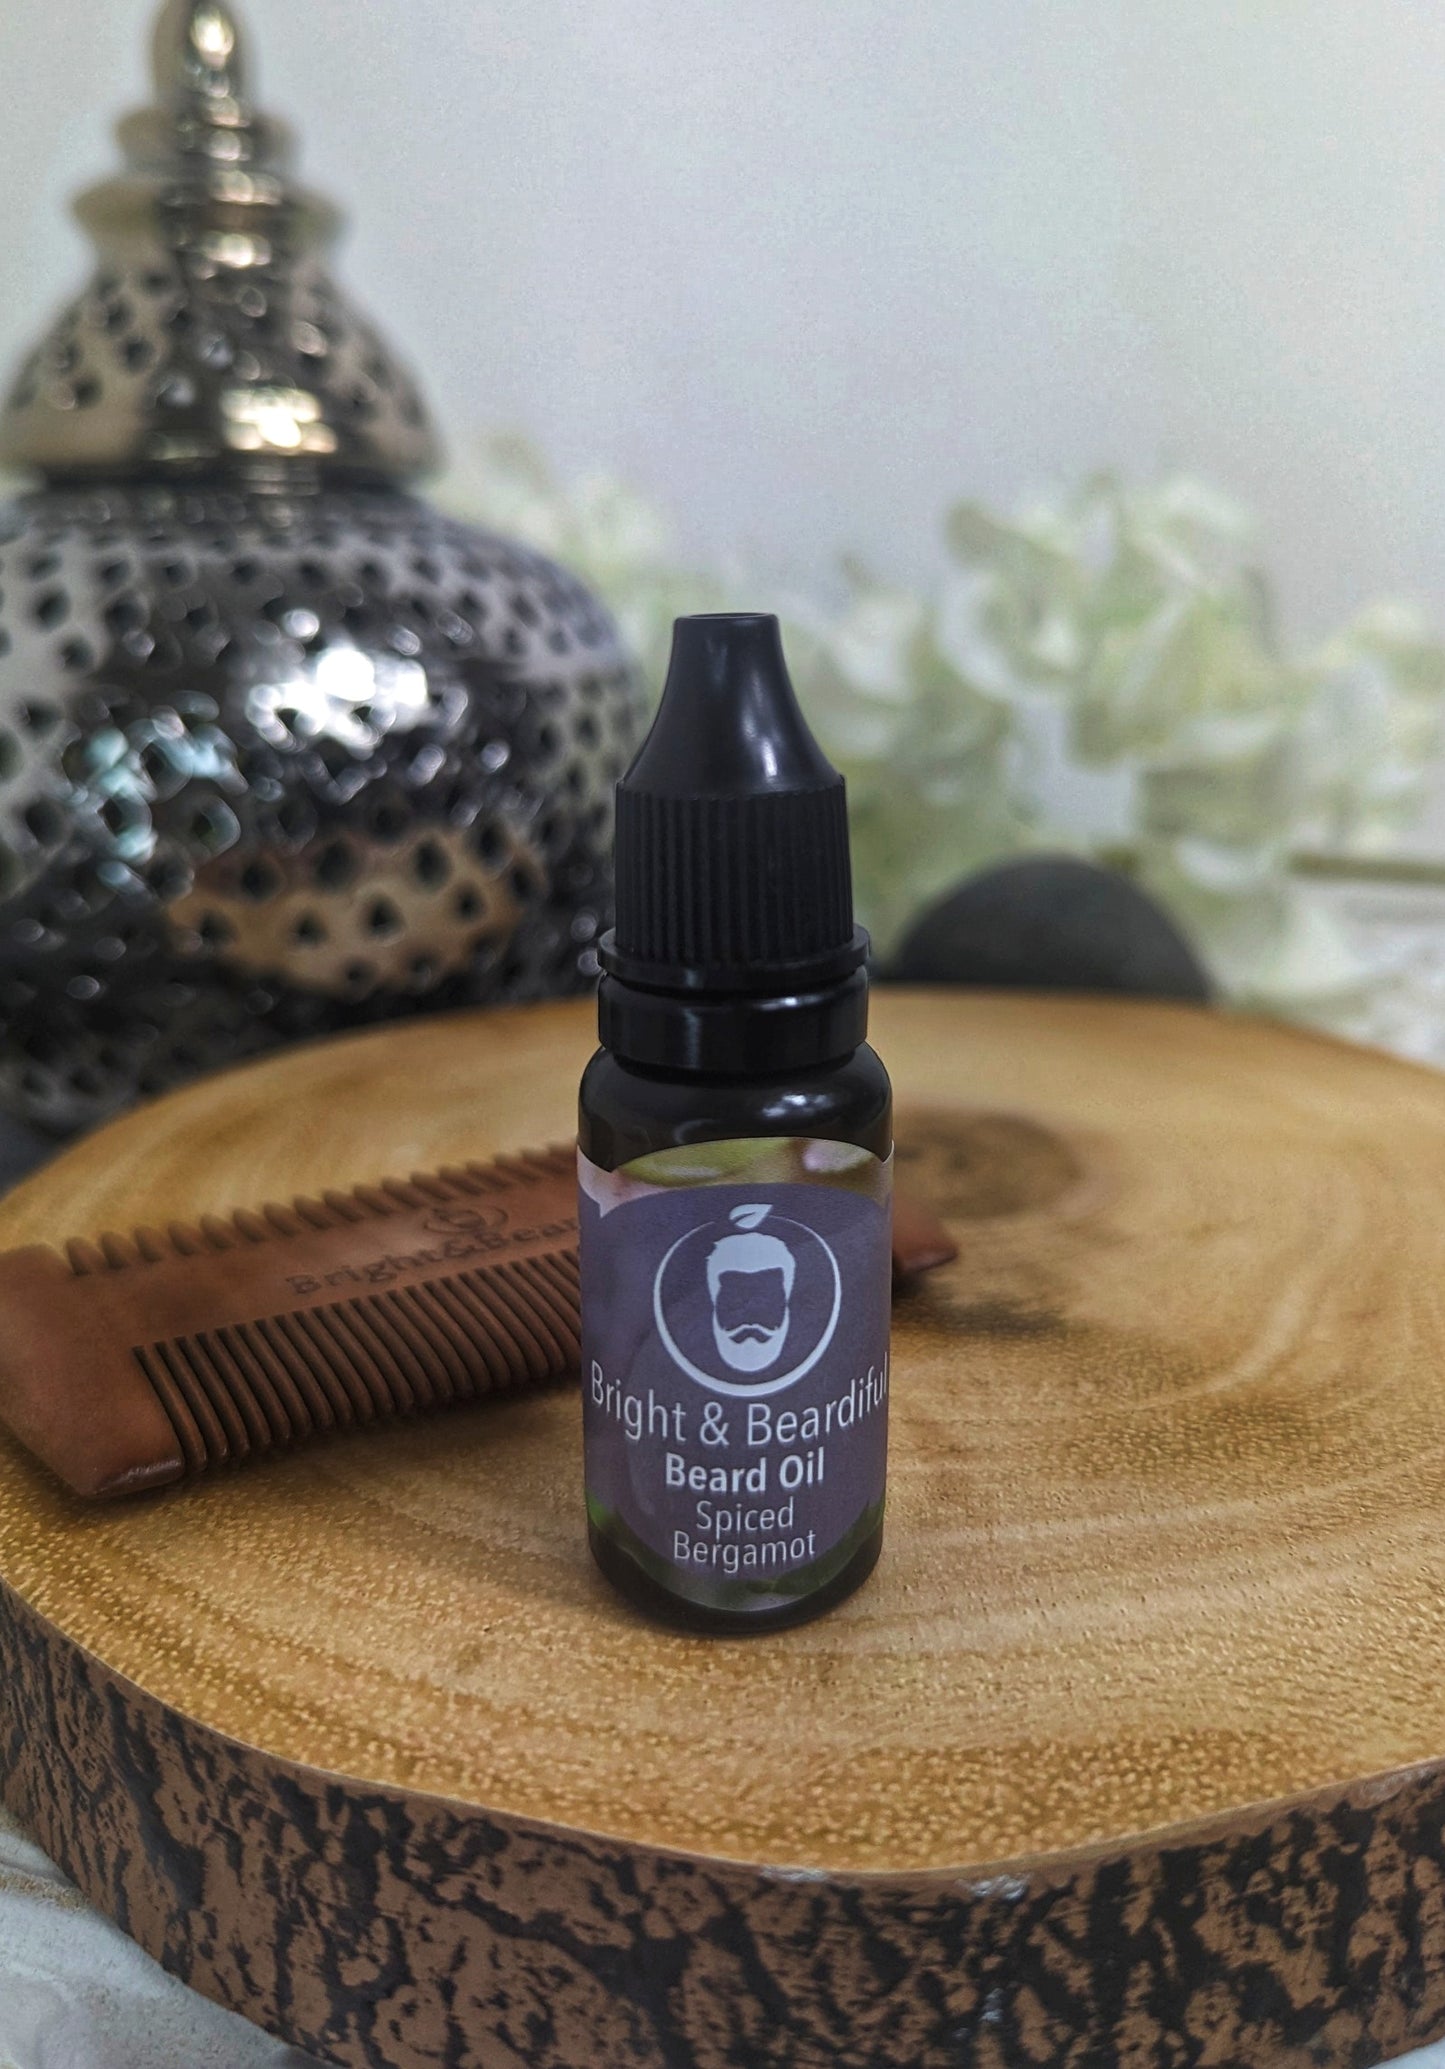 Beardiful Beard Oil 15ml or 30ml